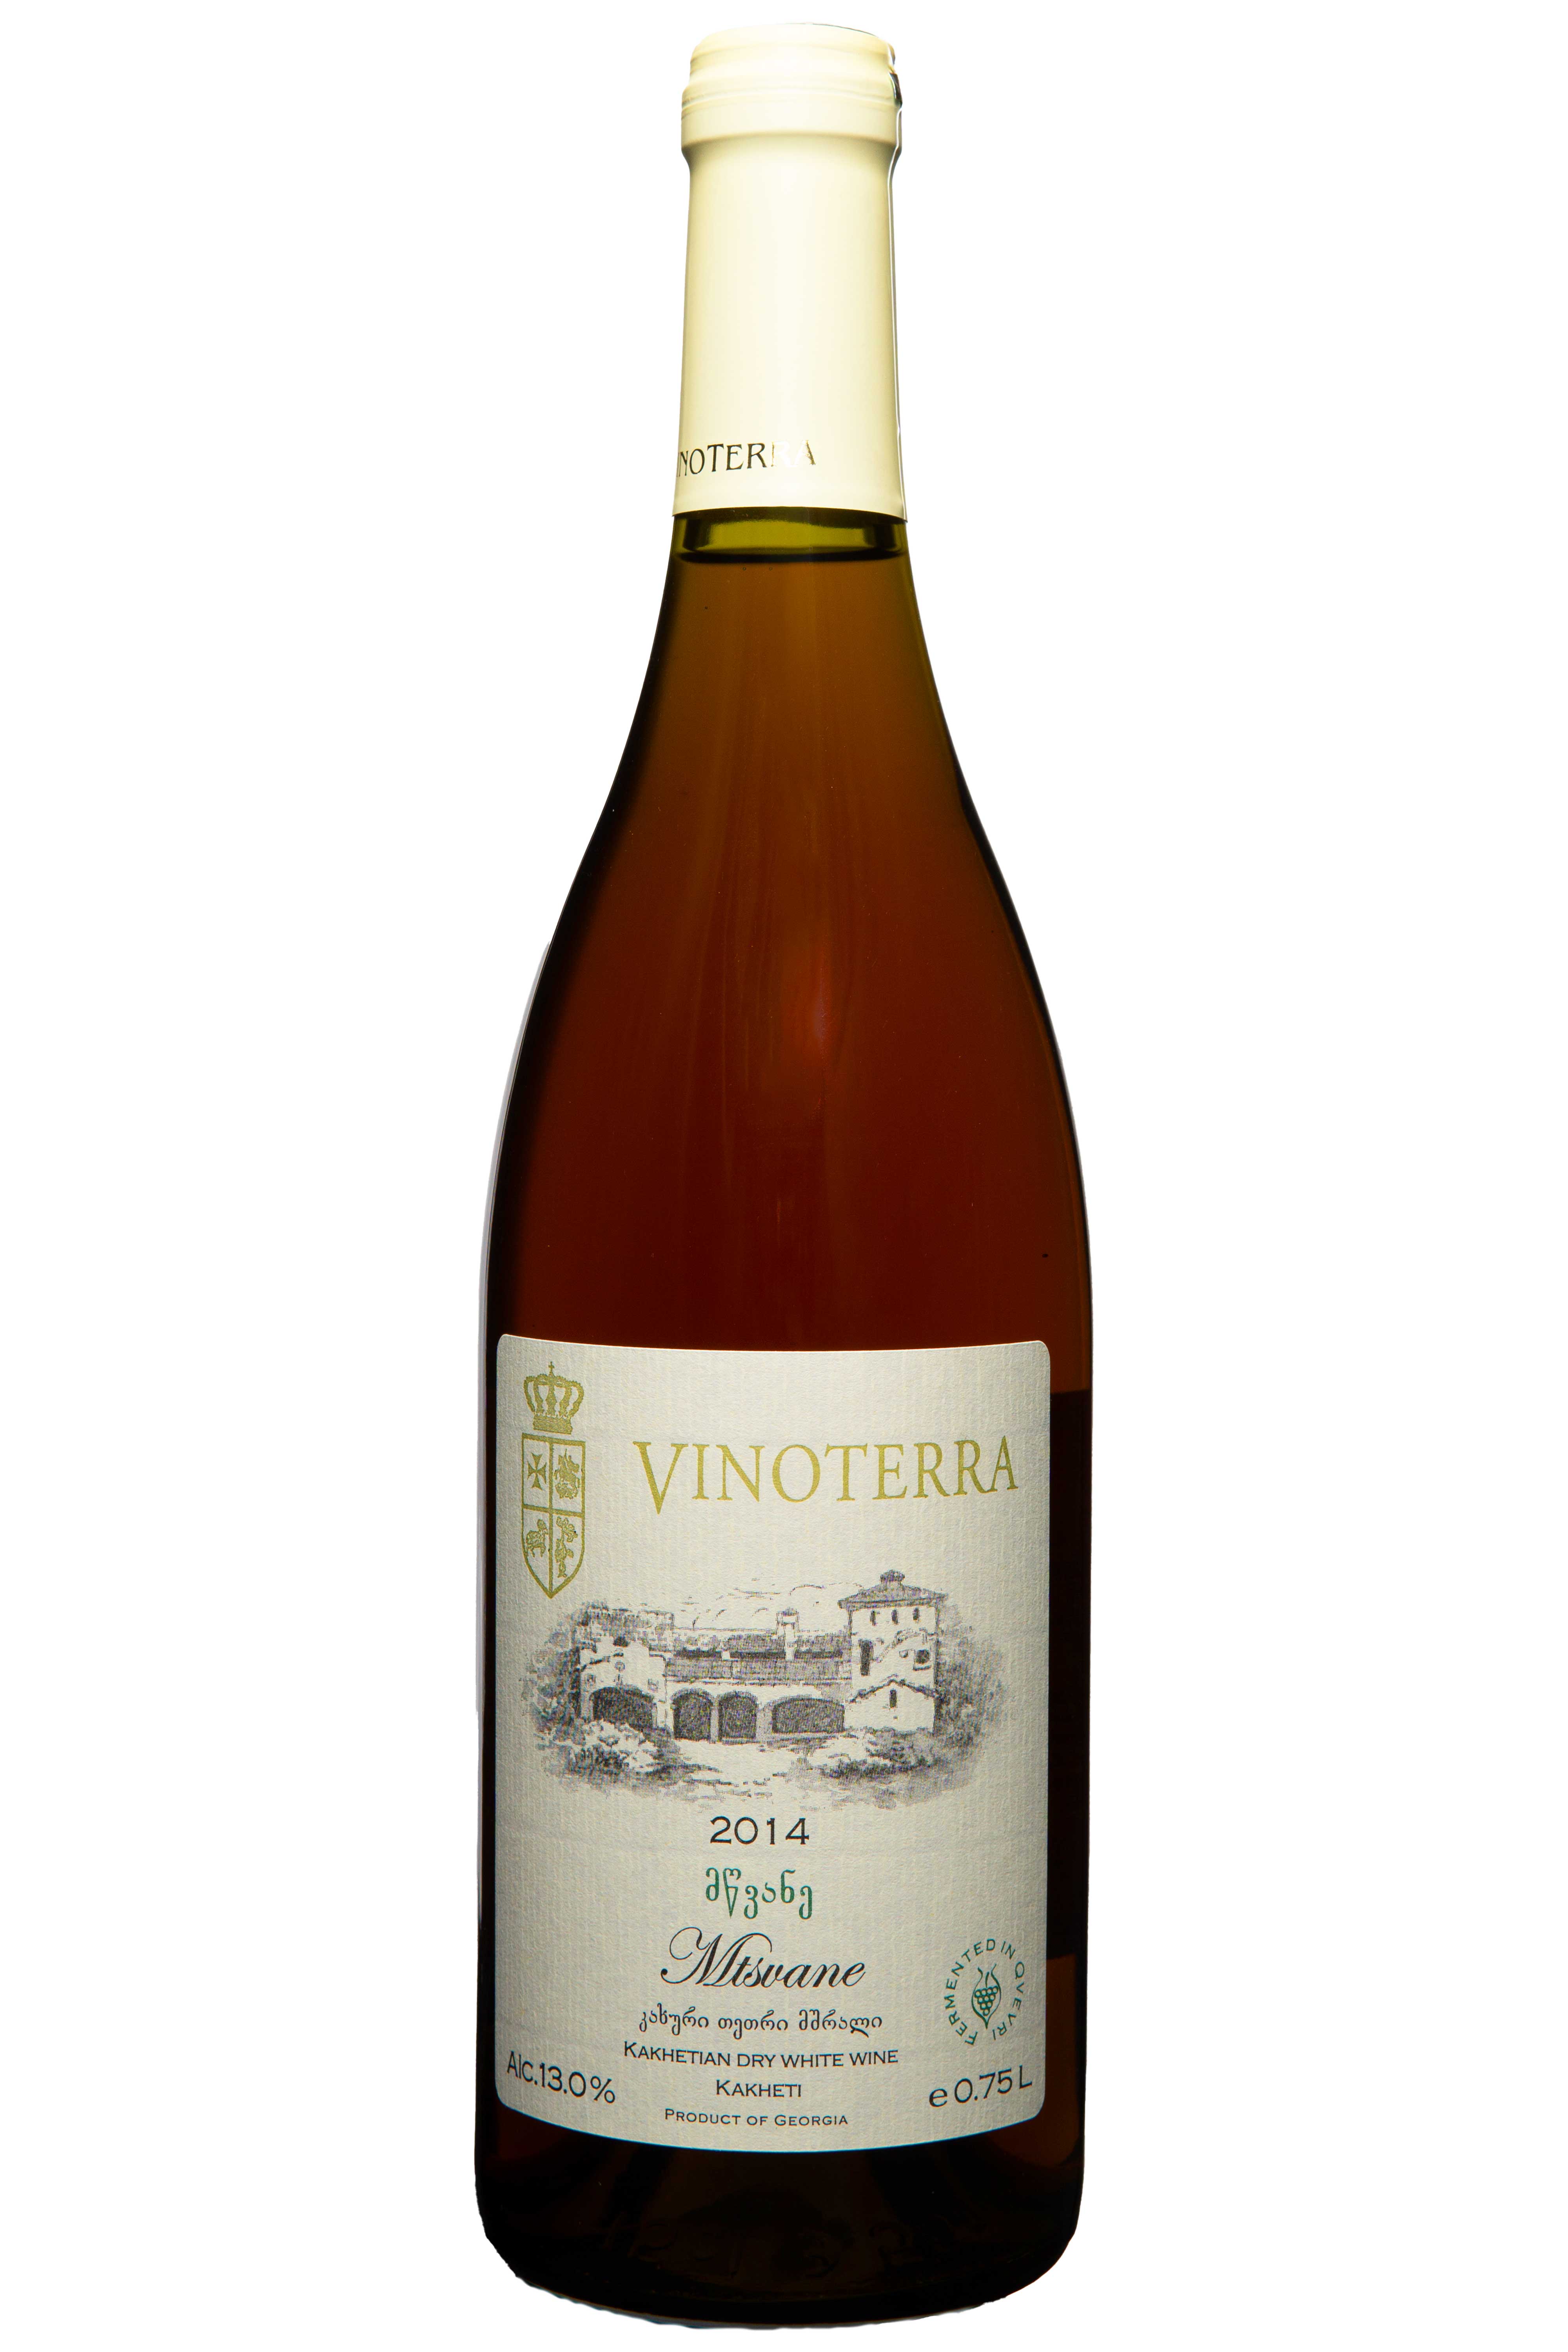 Georgischer Wein Flasche 0,75 Liter Schuchmann Vinoterra Mtsvane 2014 Qvevri Orange wine trocken